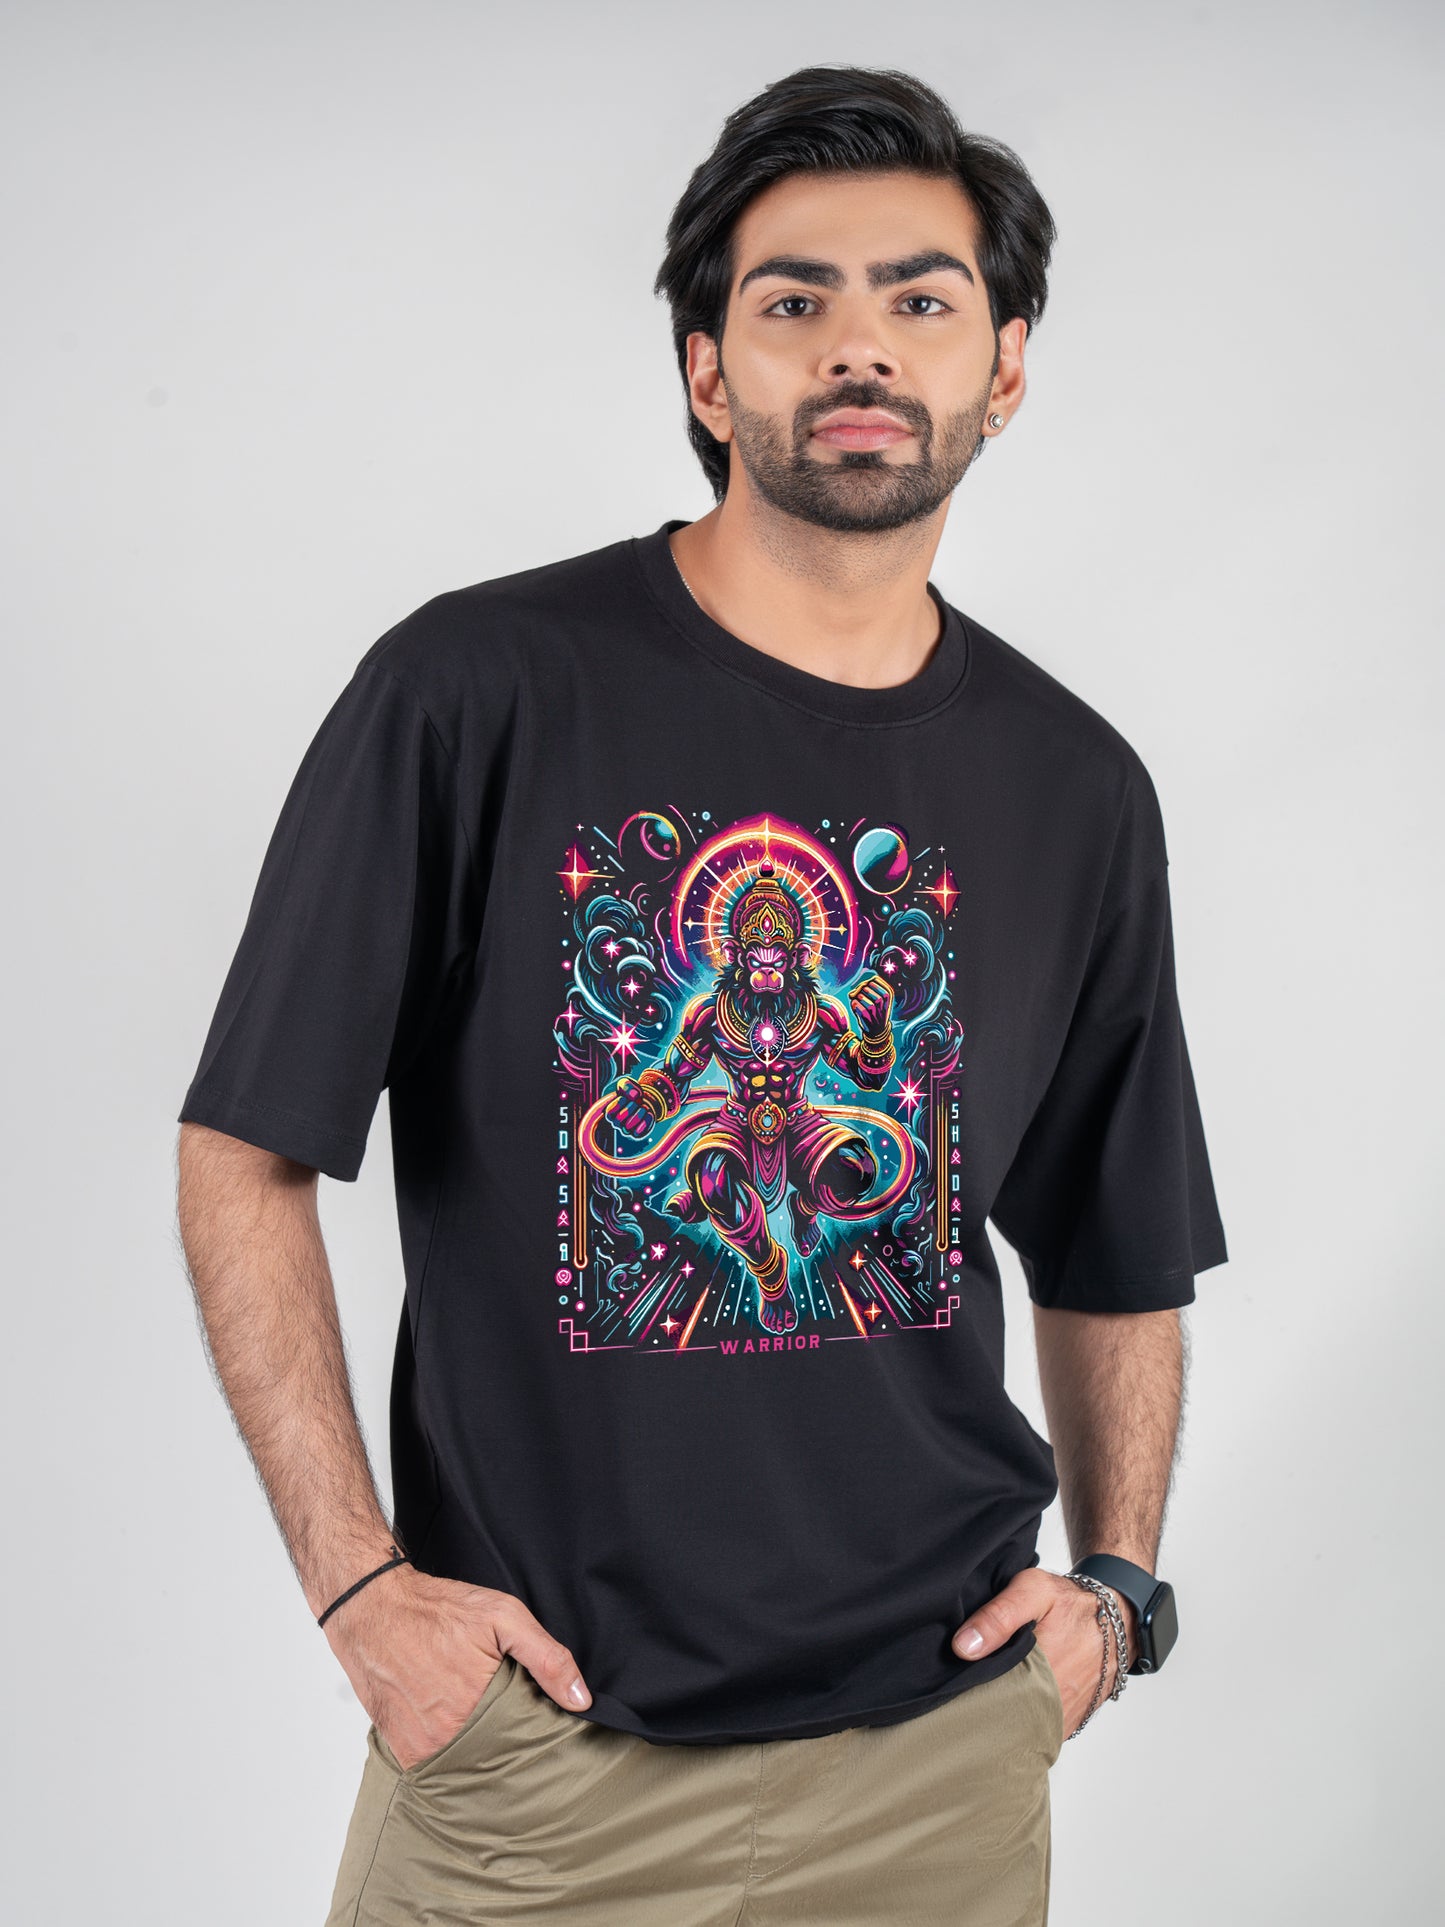 Hanuman The Warrior Black DropShoulder T-Shirt